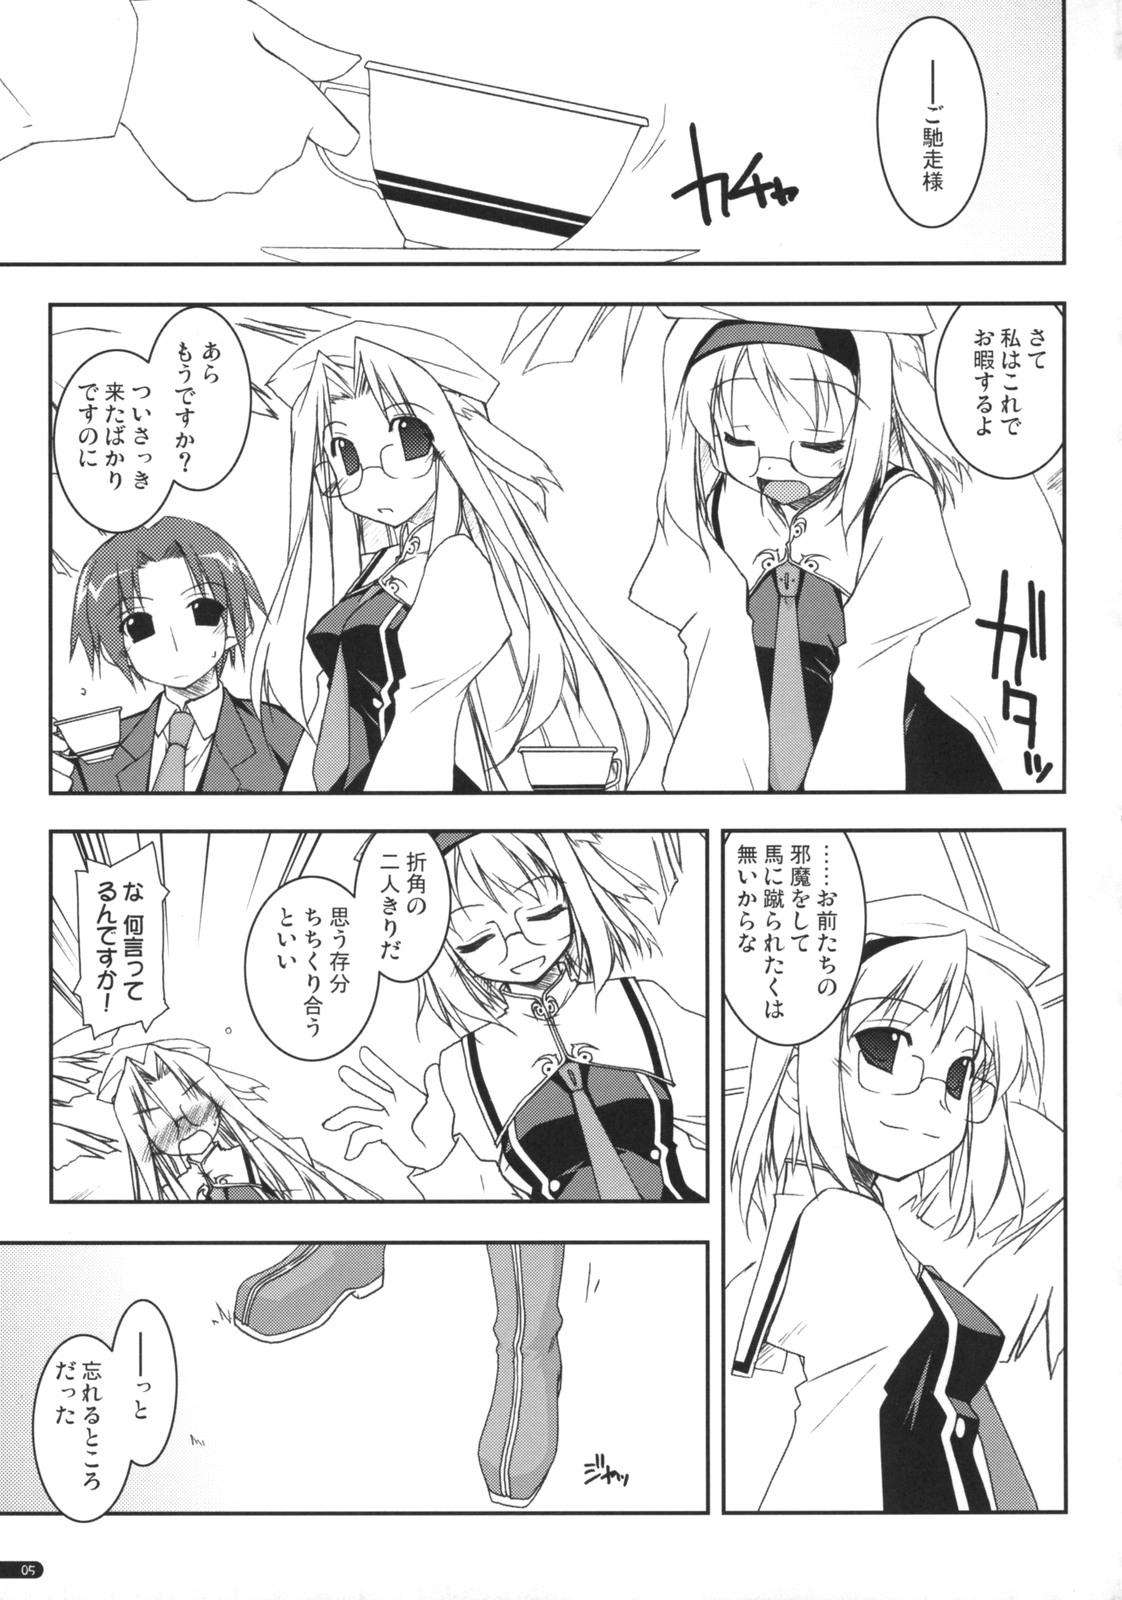 Gordita case of "Hashiba Youna" - Haruka ni aogi uruwashi no Slave - Page 4